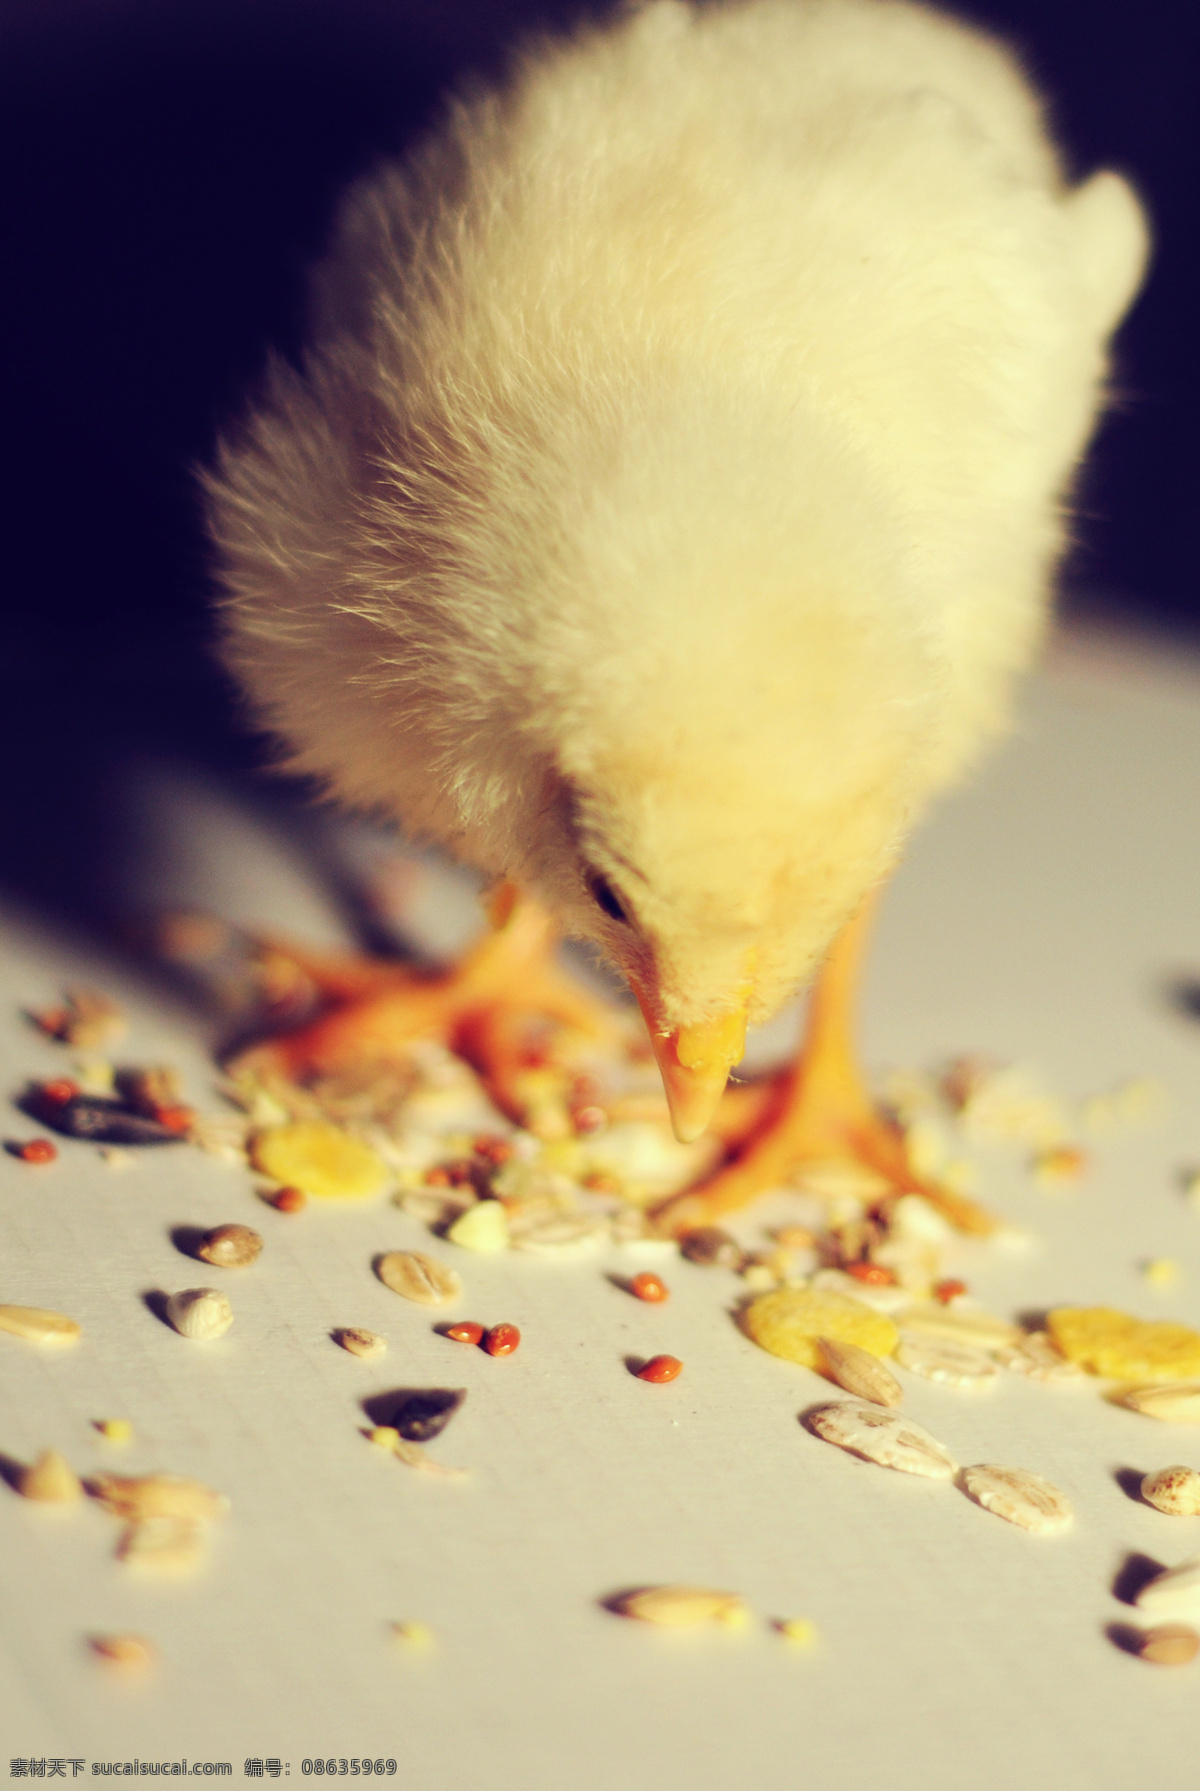 宠物 动物 动物摄影 鸡 可爱 母鸡 鸟类 小鸡 吃 米图 片 小鸡吃米 养鸡 养殖业 家禽家畜宠物 黄毛鸡 鸡仔 生物世界 矢量图 日常生活